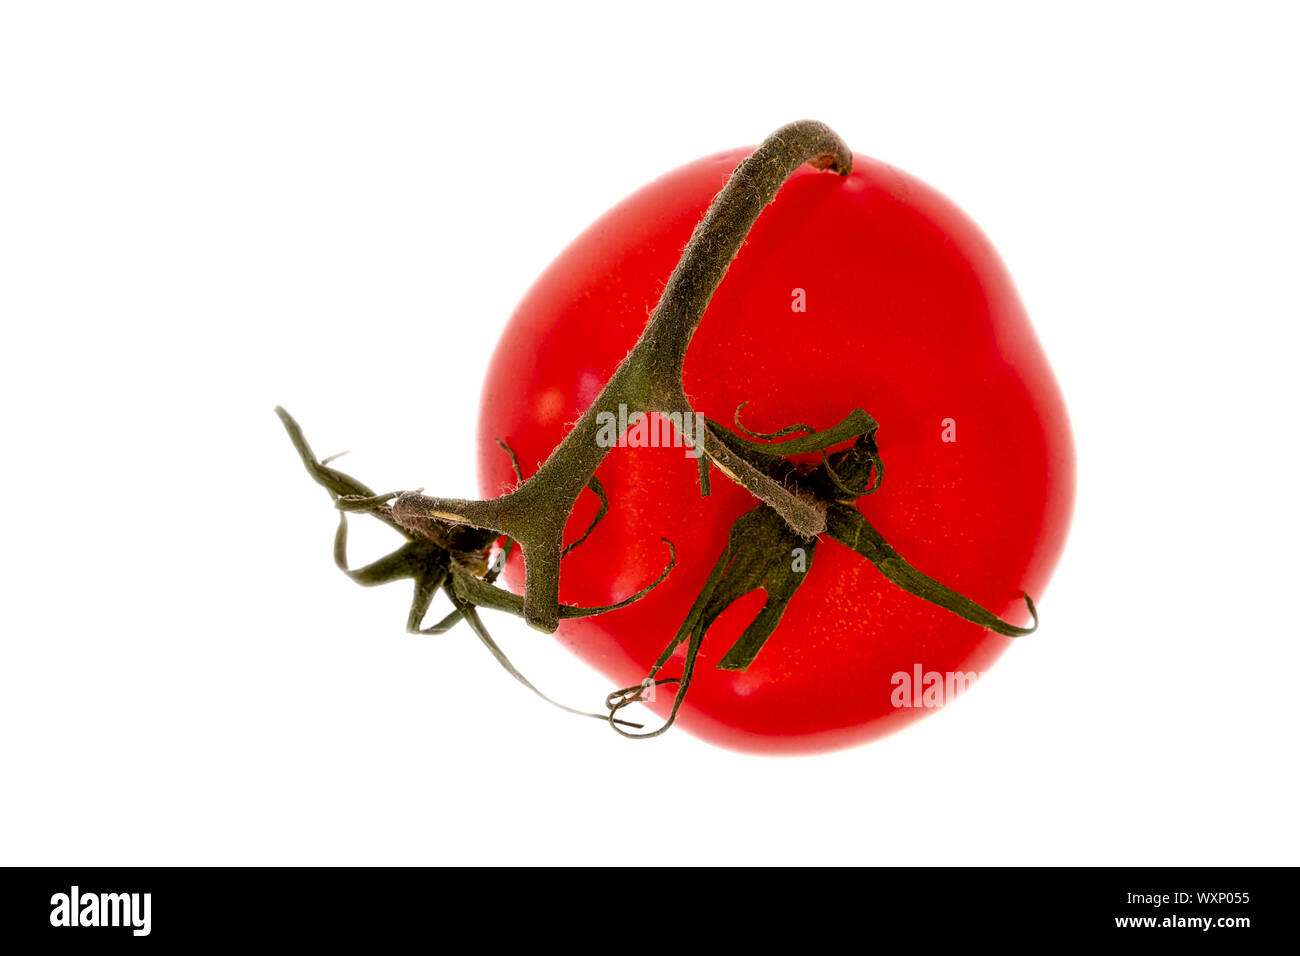 Ripe rosso pomodoro con peduncolo verde su sfondo bianco Foto Stock